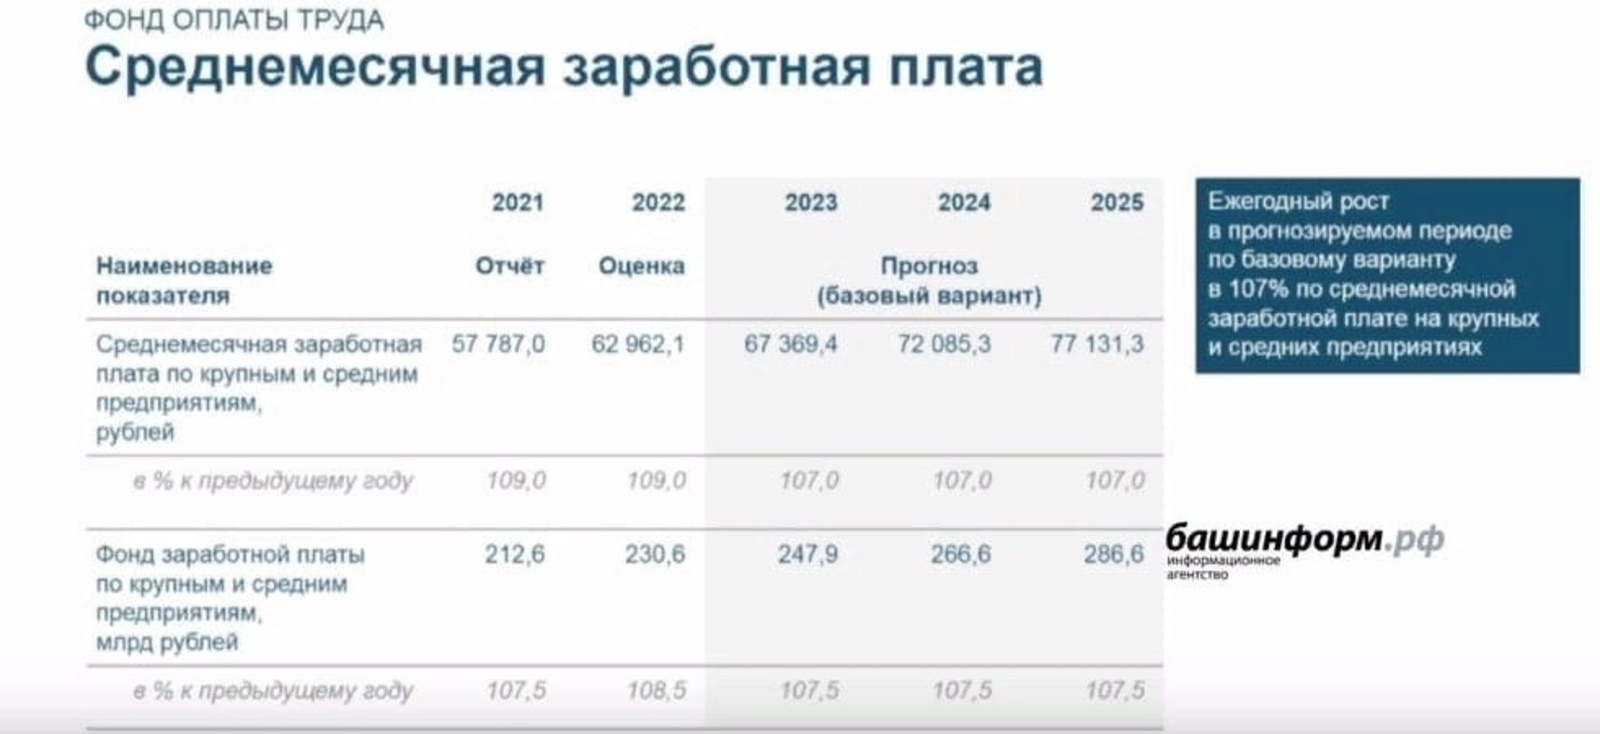 Средняя зарплата в Уфе к 2025 году составит более 77 тысяч рублей